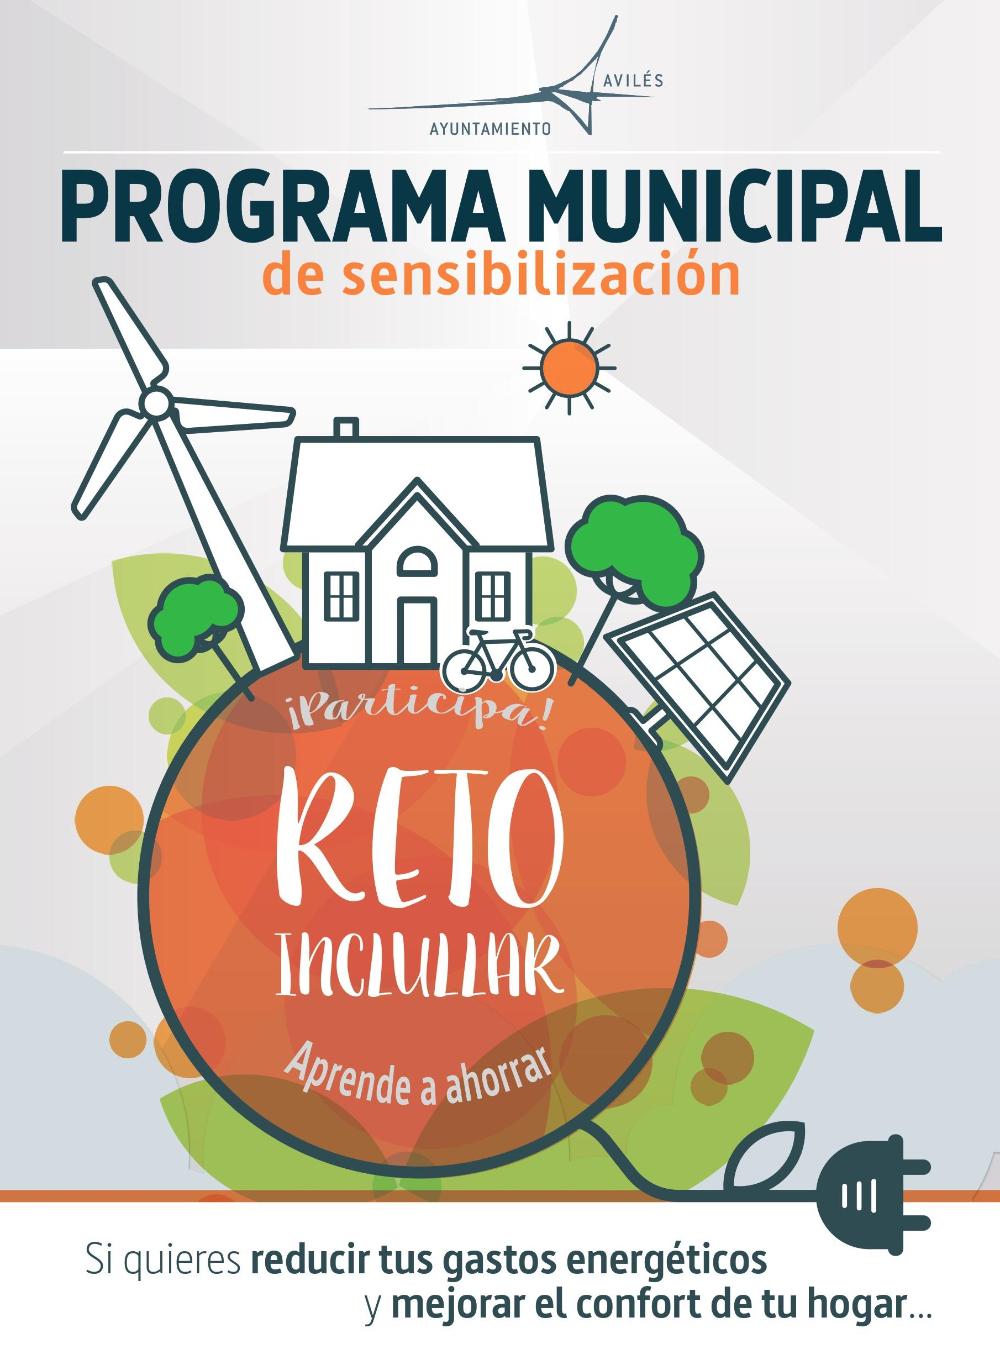 El Ayuntamiento programa 4 talleres sobre eficiencia energética en los centros socioculturales